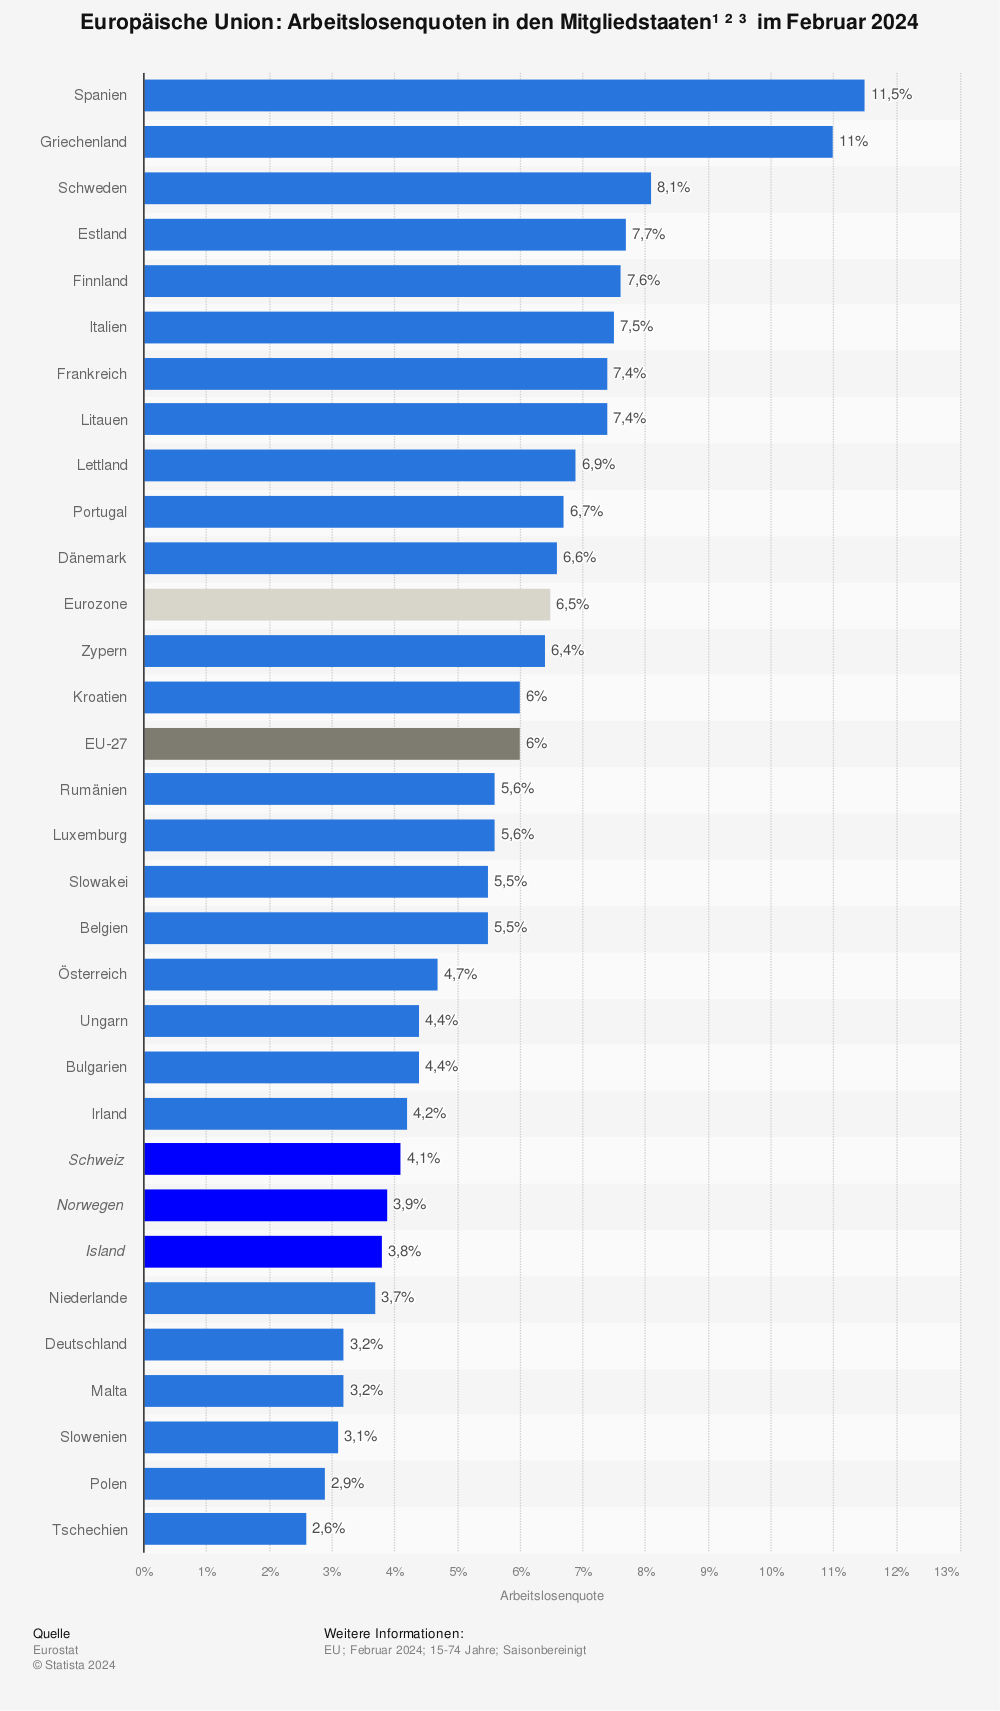 Statistik: Europäische Union: Arbeitslosenquote in den Mitgliedsstaaten im April 2014 | Statista